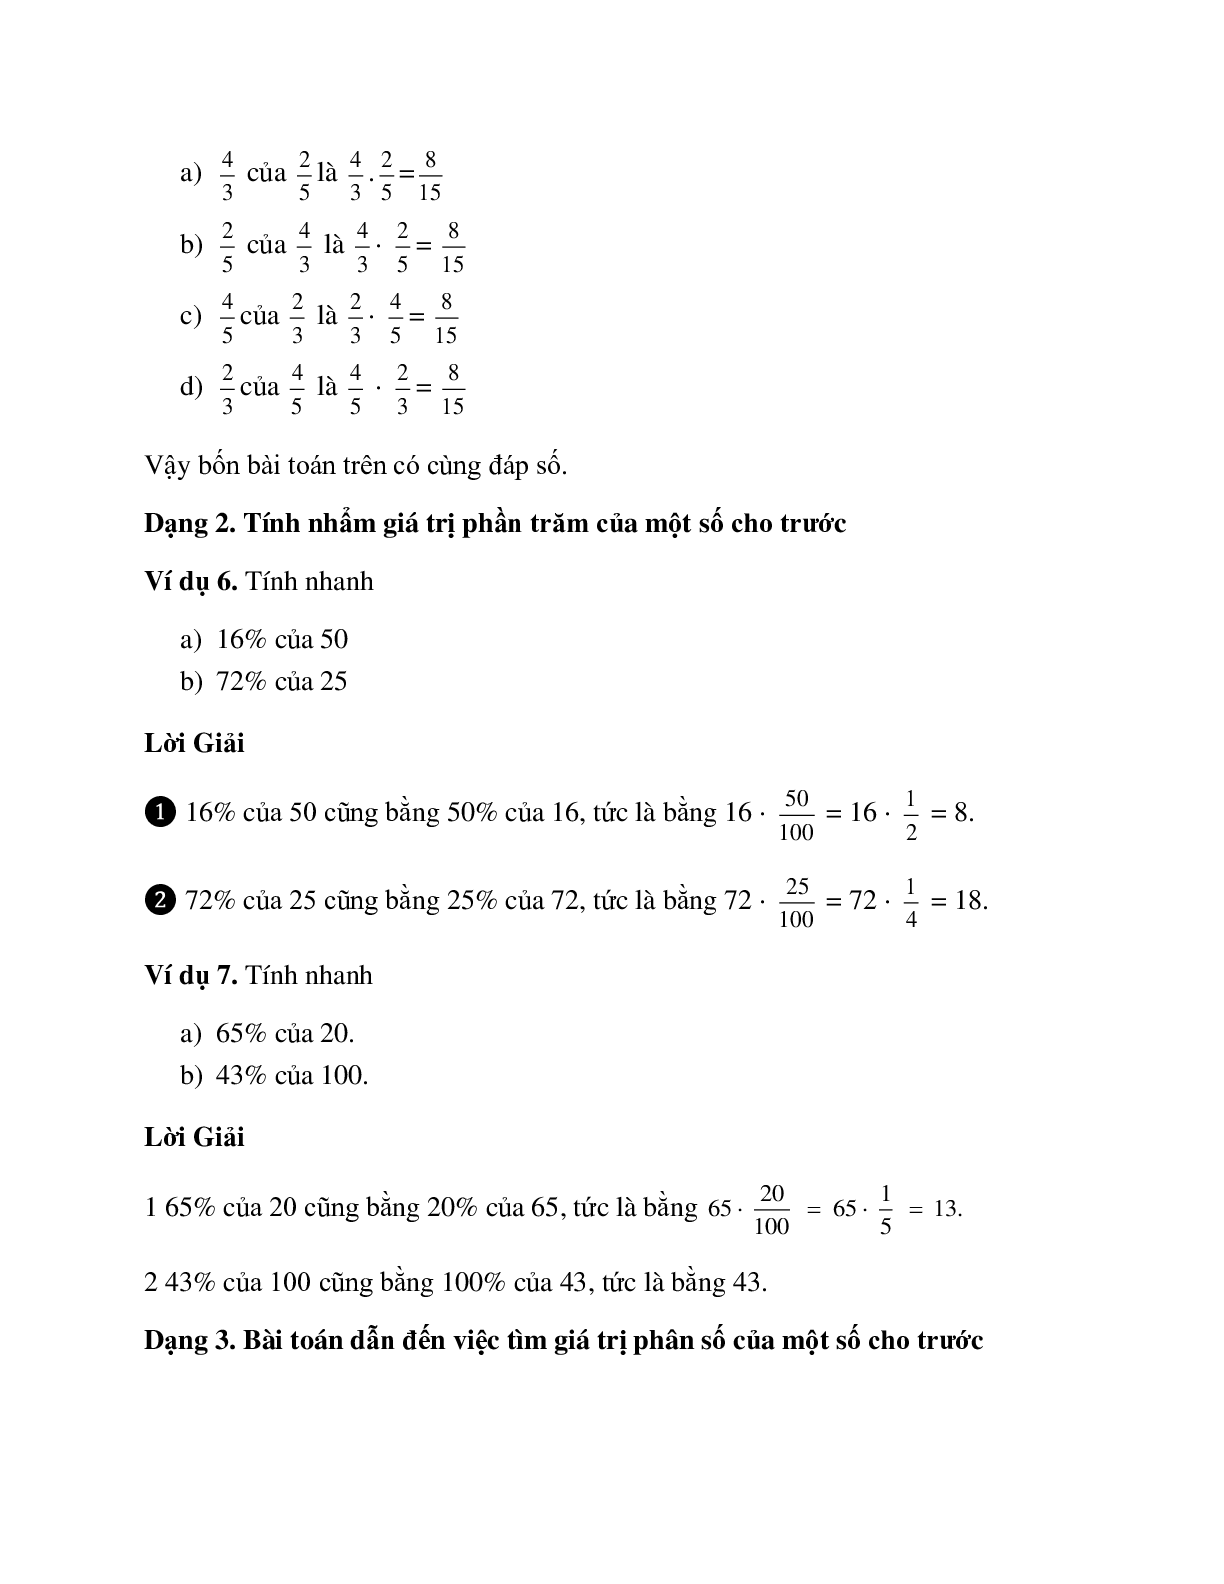 Bài tập về Tìm giá trị phân số của một số cho trước có lời giải (trang 3)